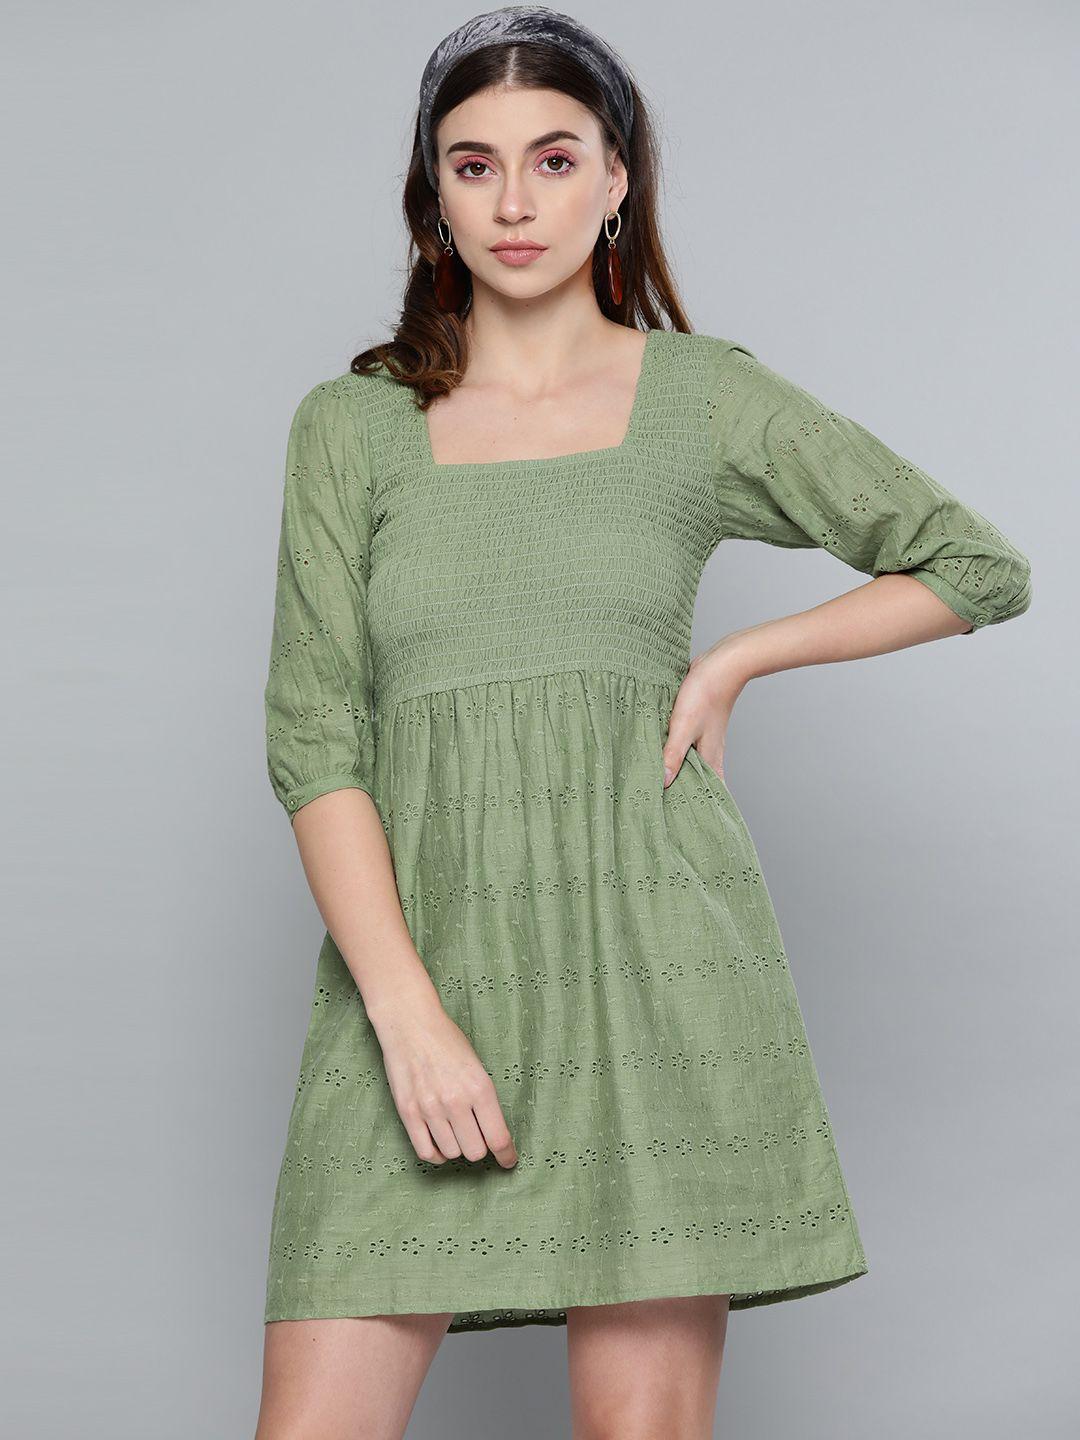 sassafras olive green schiffli embroidered a-line dress